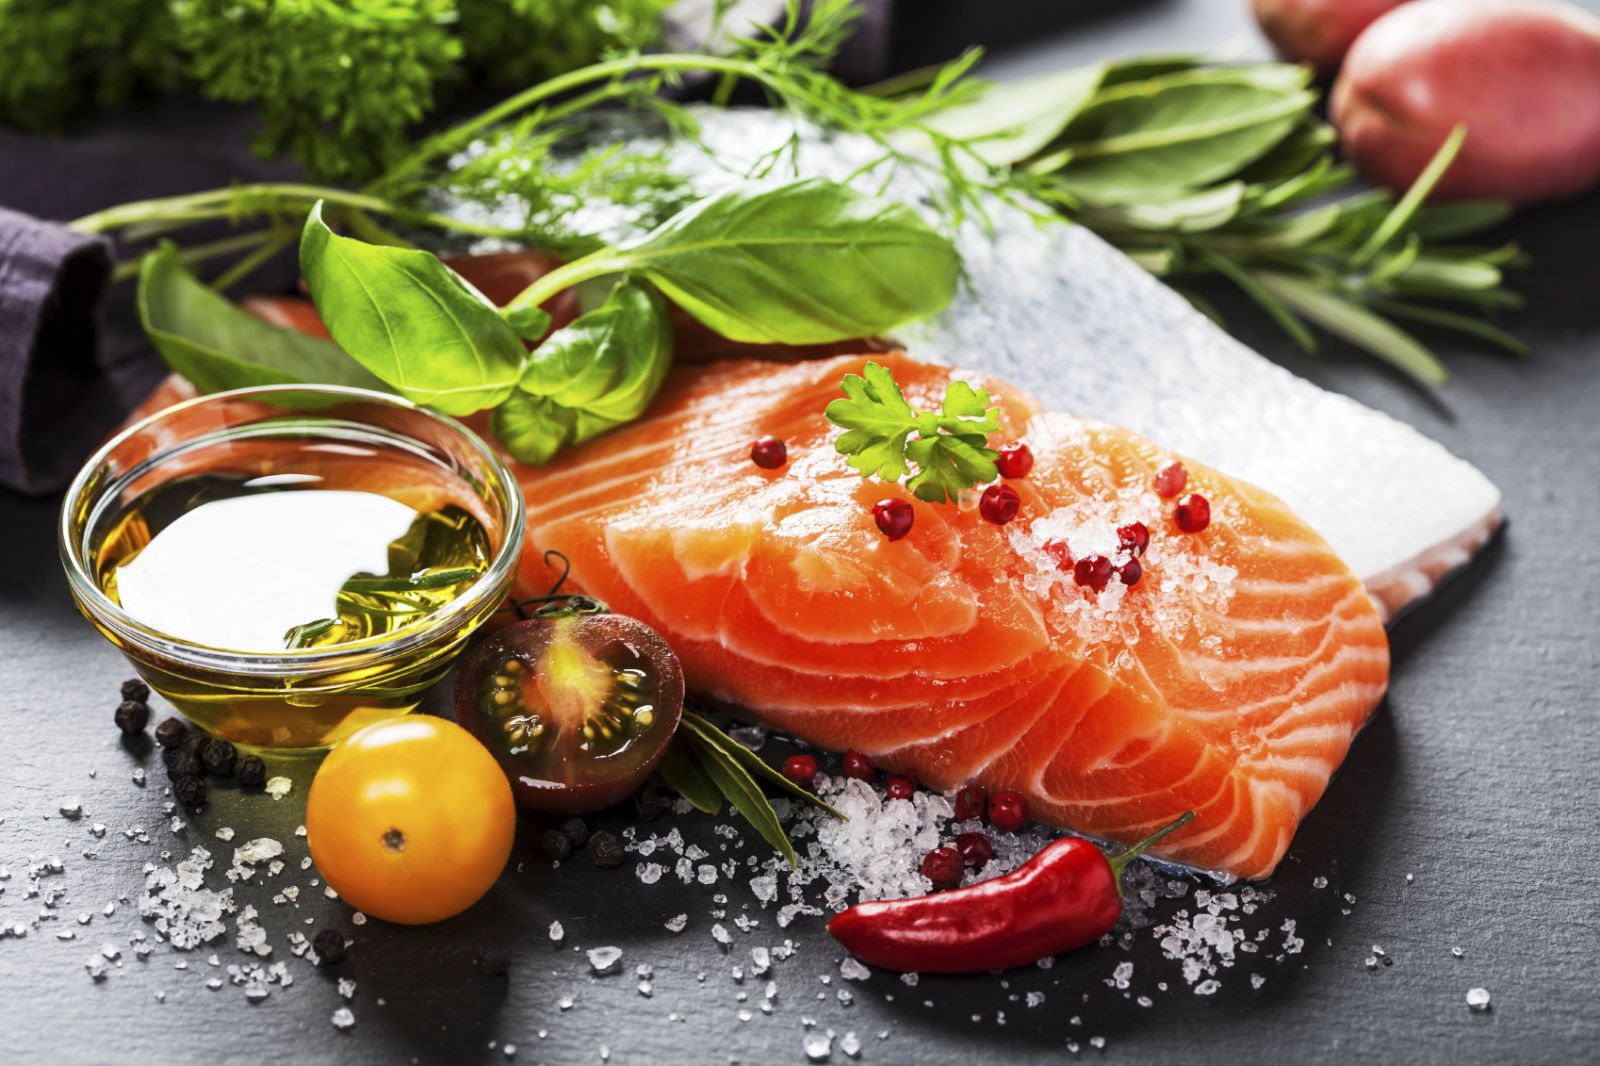 Mediterranean diet beats low-fat diet for long-term weight loss